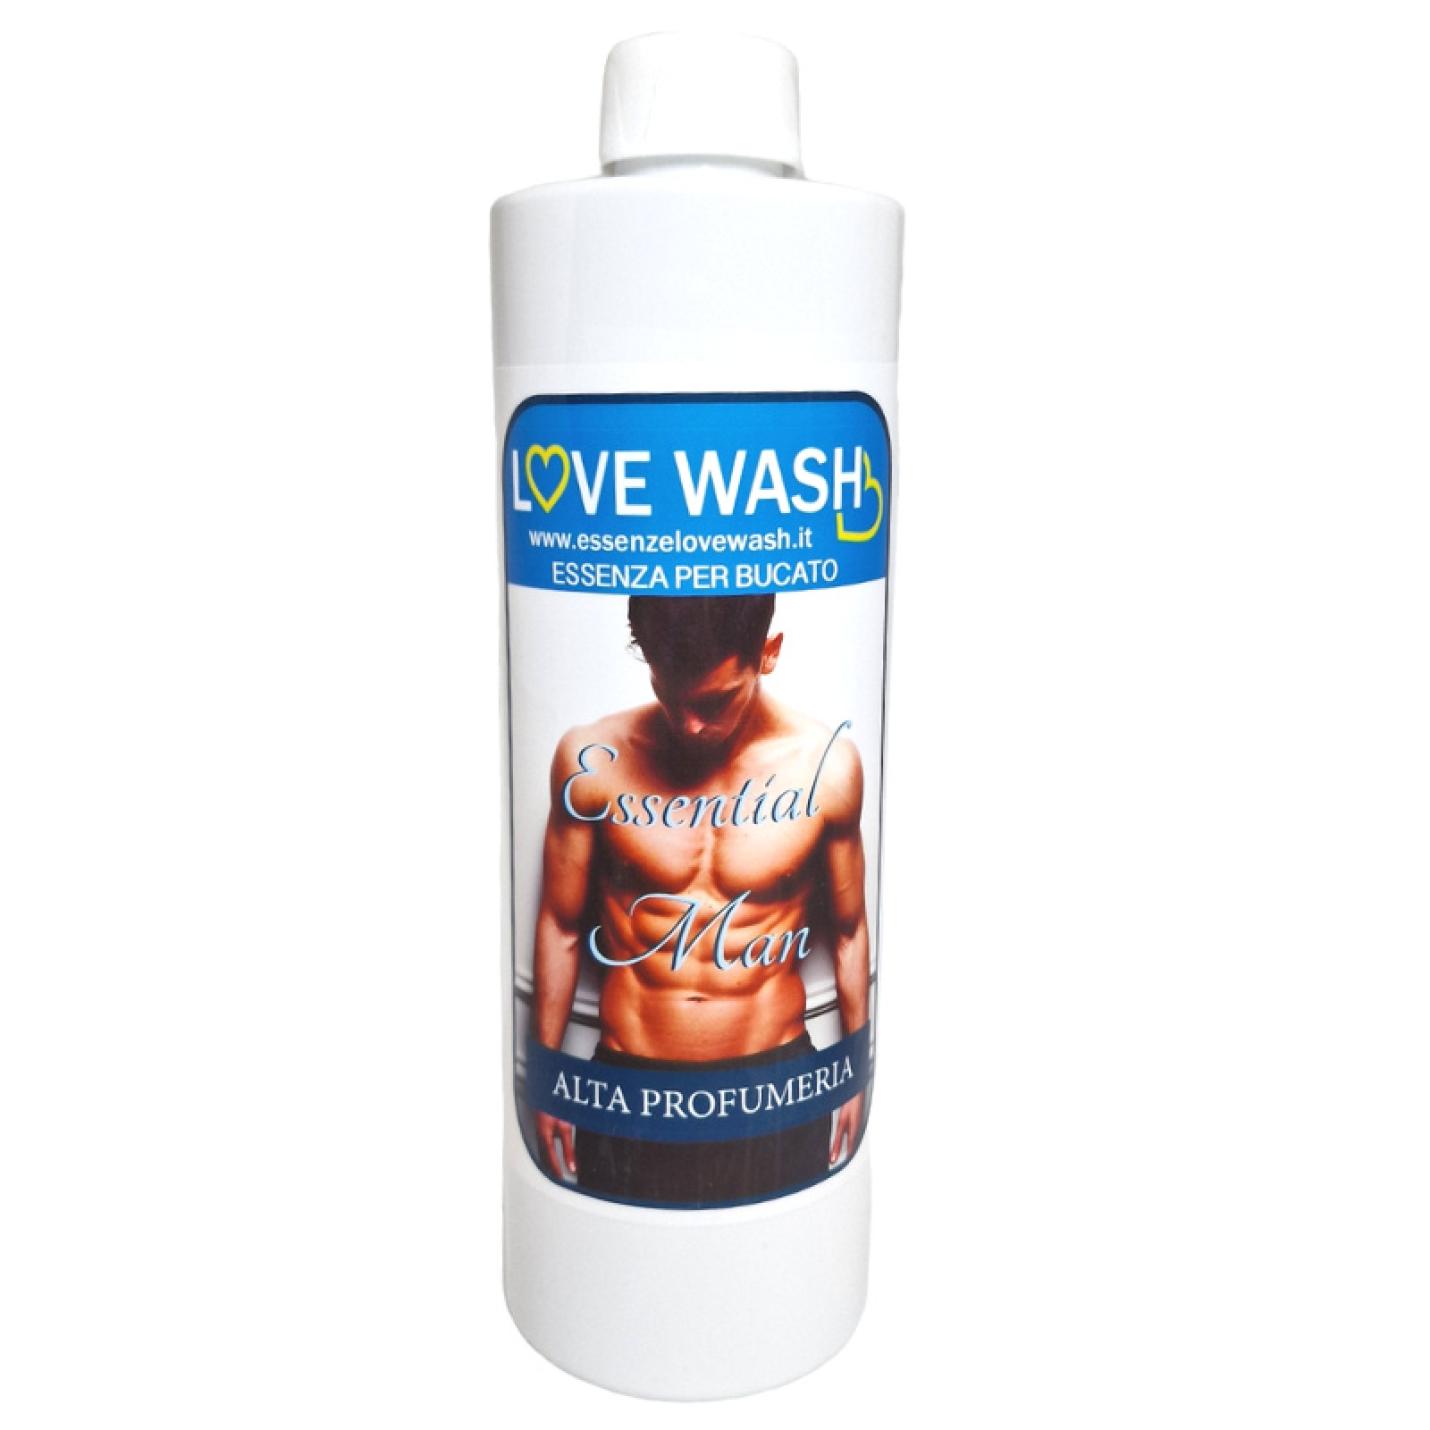 Wasparfum Essential Man 500ml - Love Wash